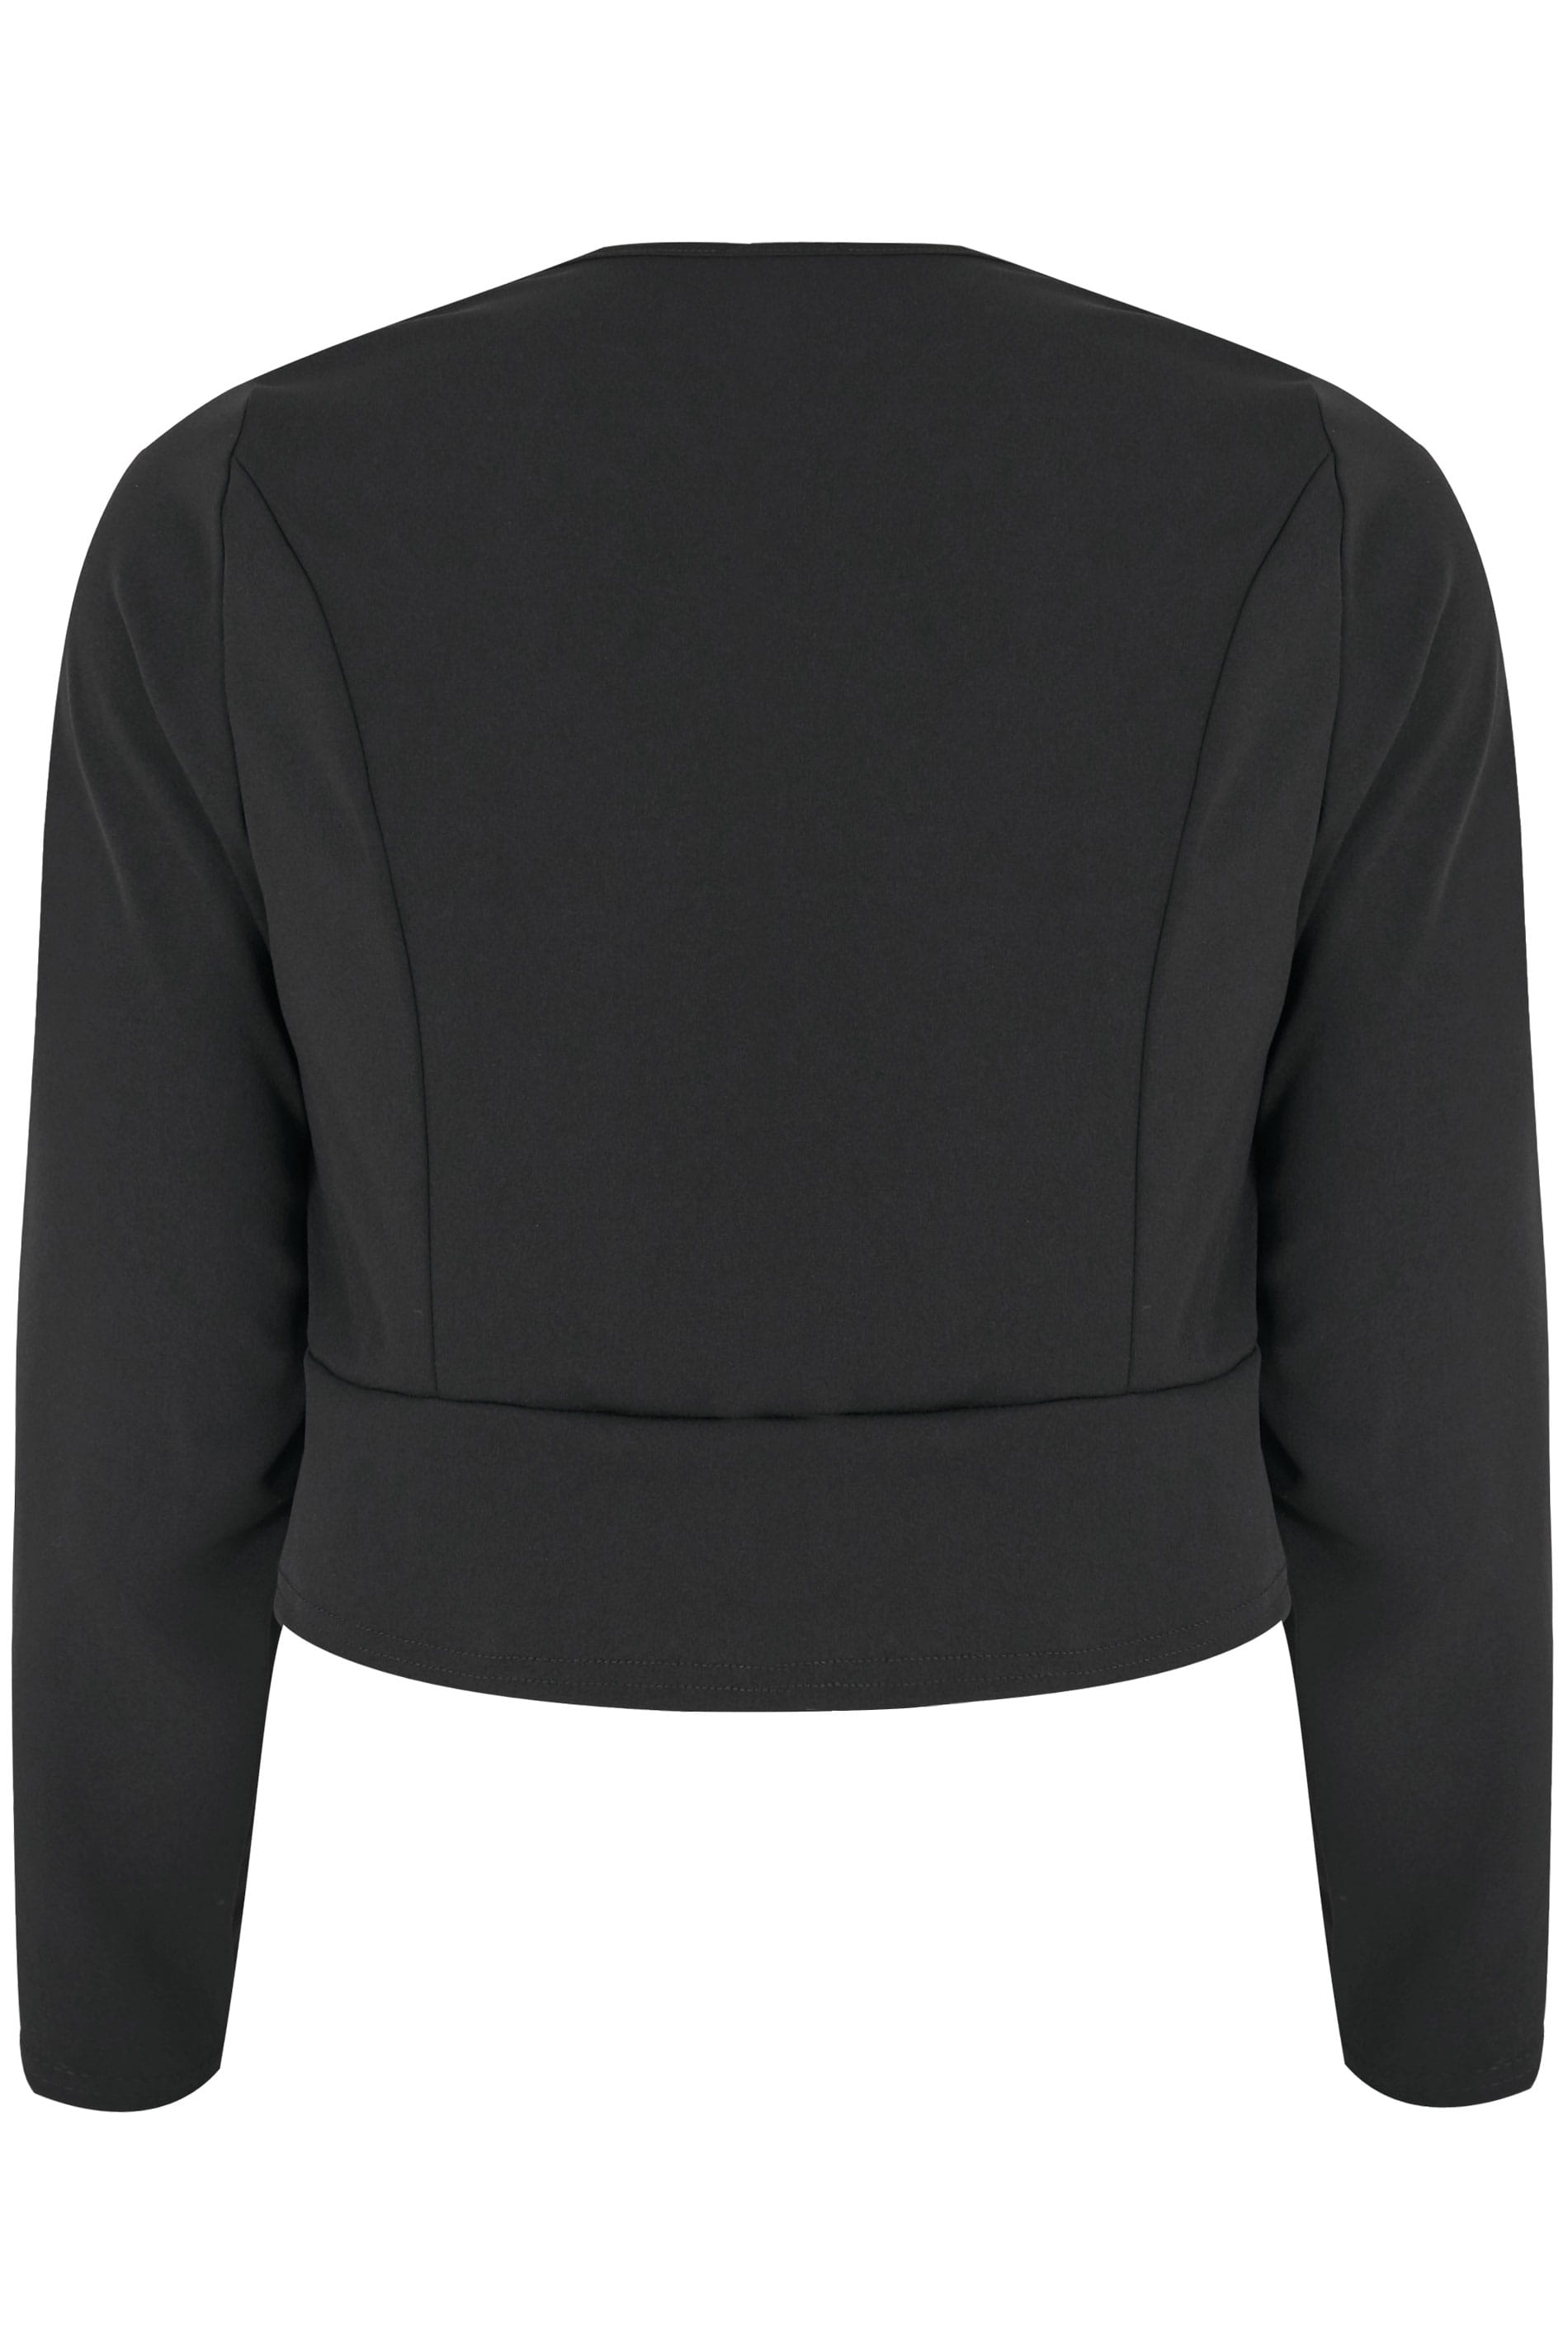 Black Cropped Bolero Jacket, plus size 16 to 36